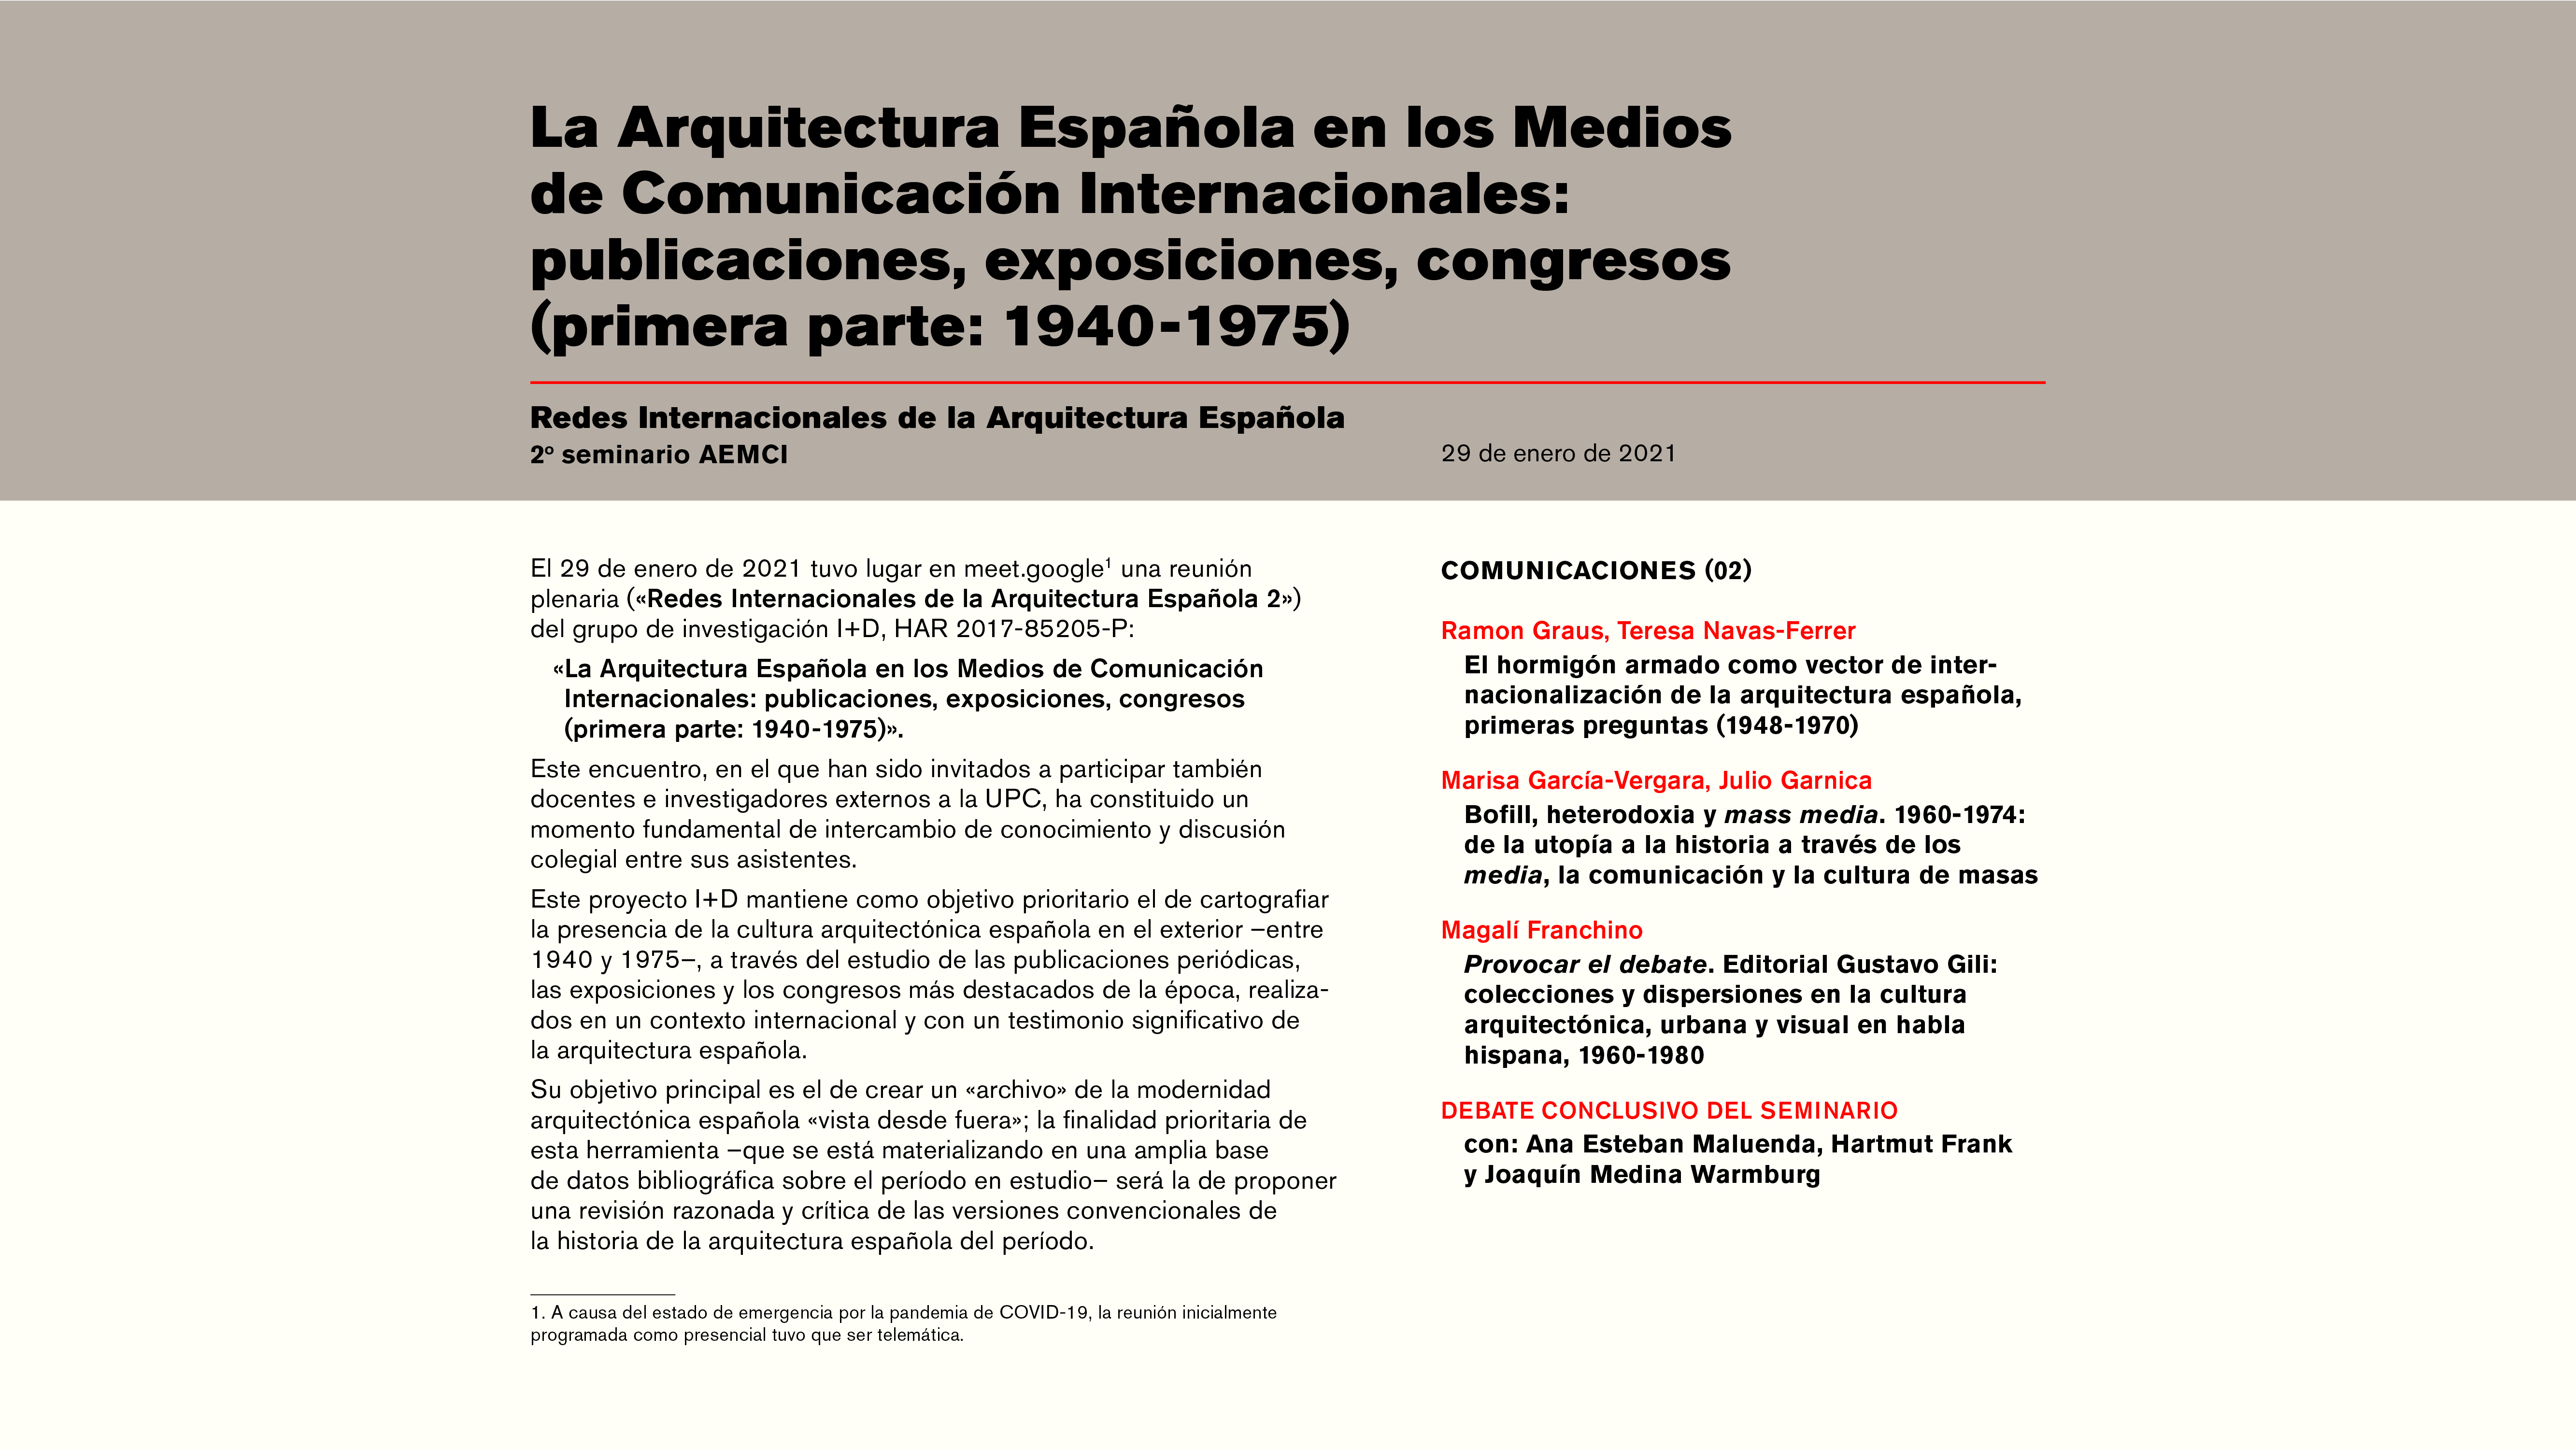 La Arquitectura Española en los Medios de Comunicación Internacionales. Primera parte: (1940-1975)